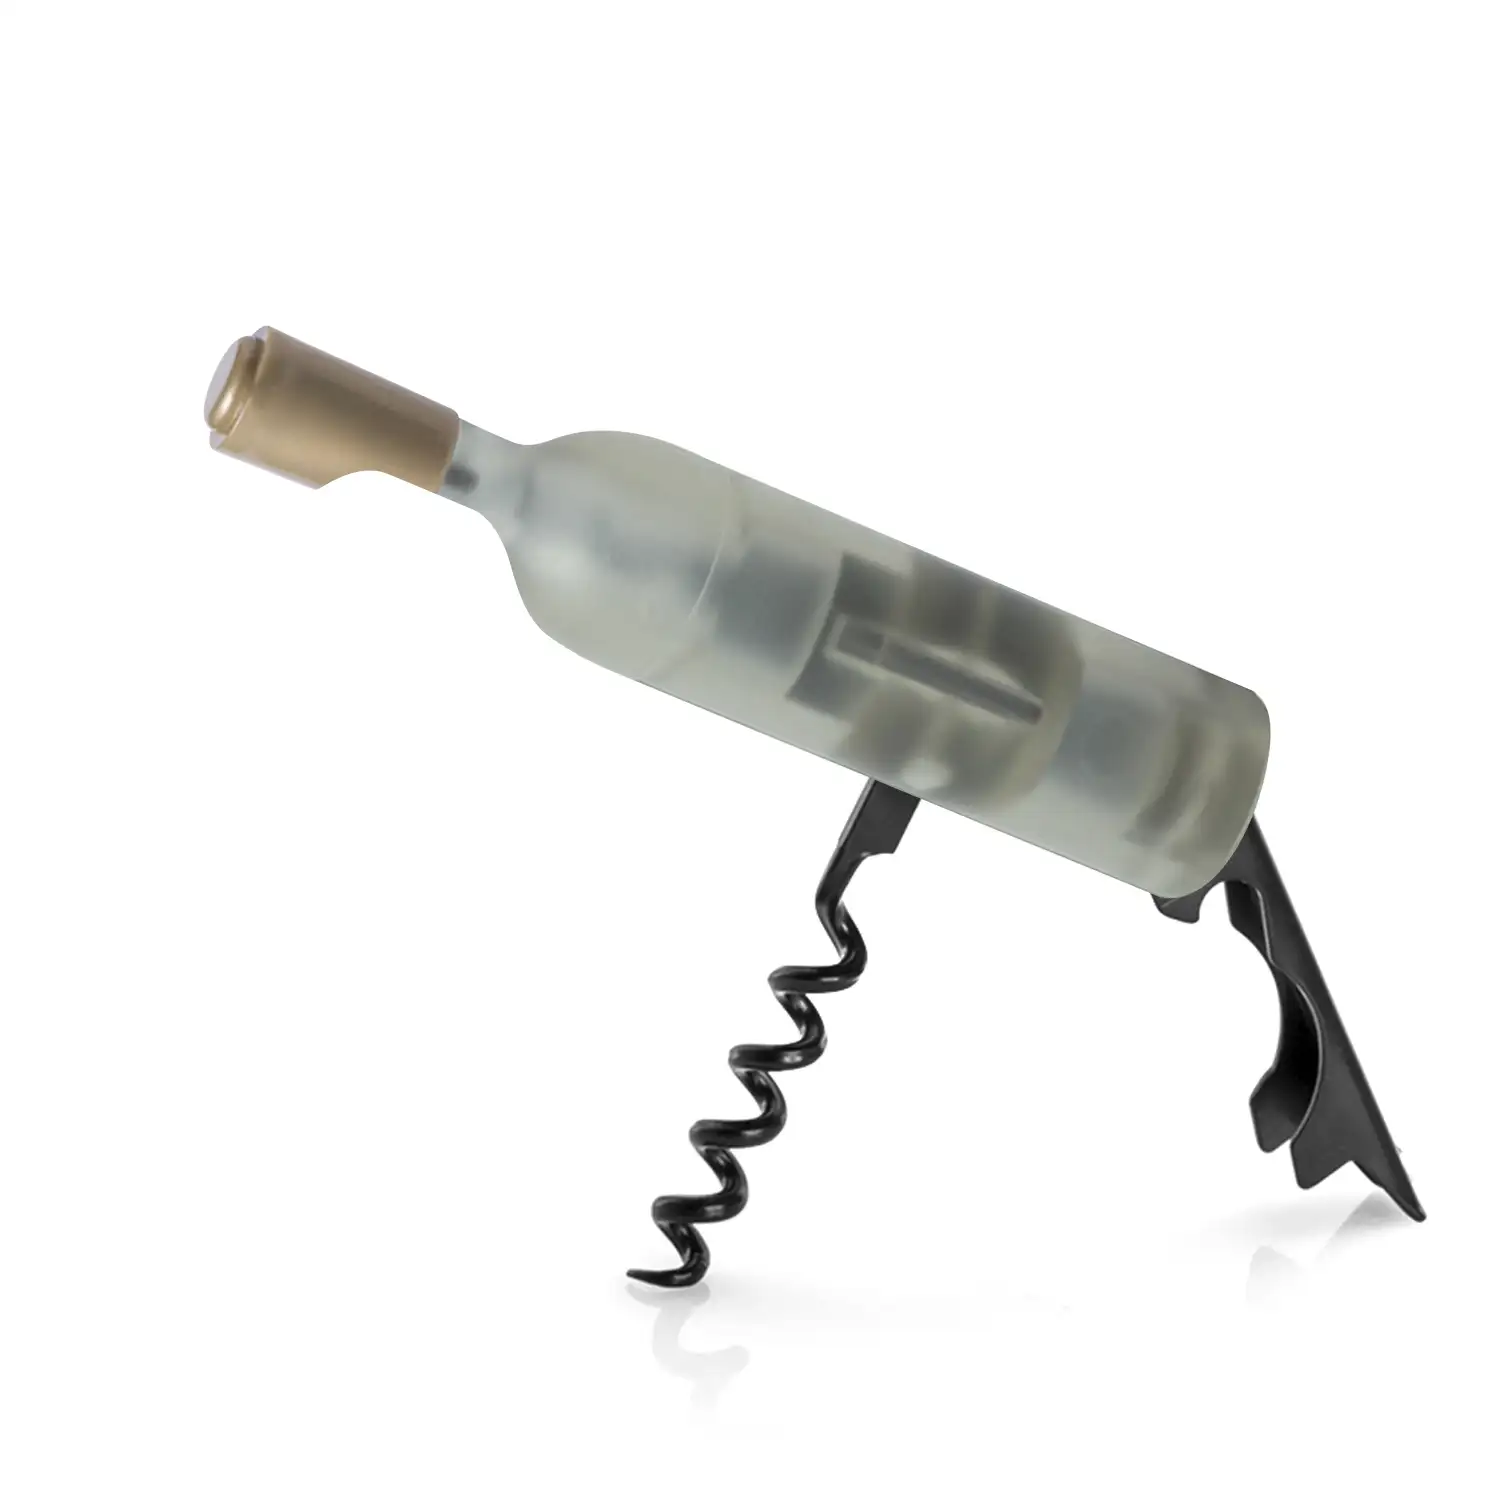 Nolix, sacacorchos magnético con forma de botella de vino.